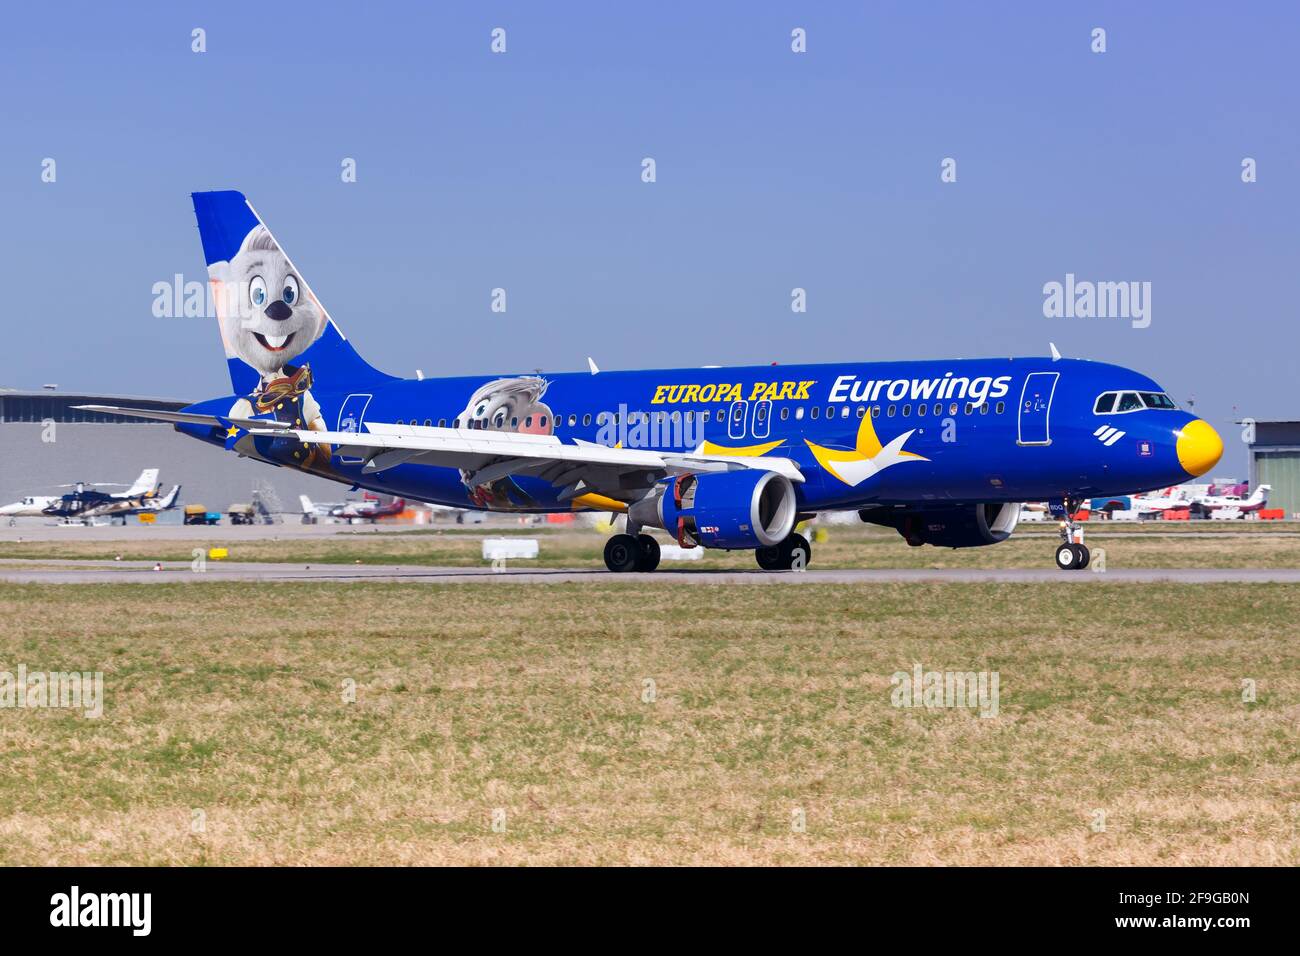 Stoccarda, Germania - 6 aprile 2018: Eurowings Airbus A320 aereo all'aeroporto di Stoccarda (Str) in Germania. Airbus è un produttore di aeromobili di Toul Foto Stock